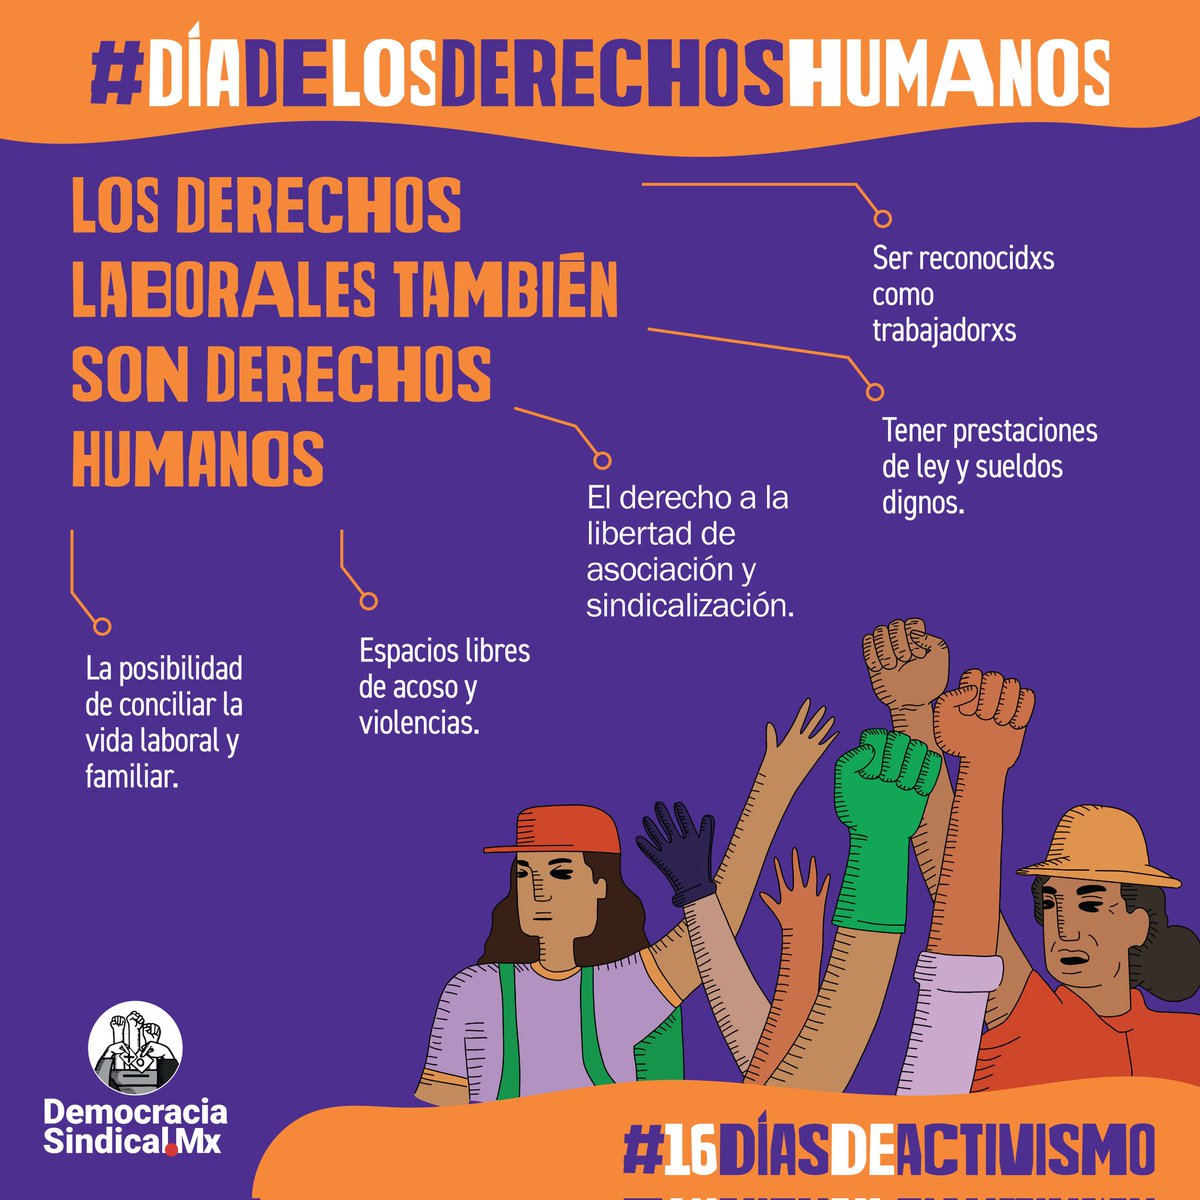 @SINACTRAHO @UNTA_Mexico @aspaprensa @PABLO_FRANCO @la_de_rh @laboralistaconf @WorkingKlassHer @RMSindicalistas @VozLaboralMx @LosMineros_Mx @OITMexico @ridersxderechos @UNIDAPPCOL #DiaInternacionalDeLosDerechosHumanos 🤲
Hoy es el último día de #16DiasDeActivismo contra la violencia hacia las mujeres 💜.
Los derechos de las mujeres trabajadoras son derechos humanos, y los derechos laborales también son derechos humanos.
¡Vidas y trabajos dignos ya! ✊💥